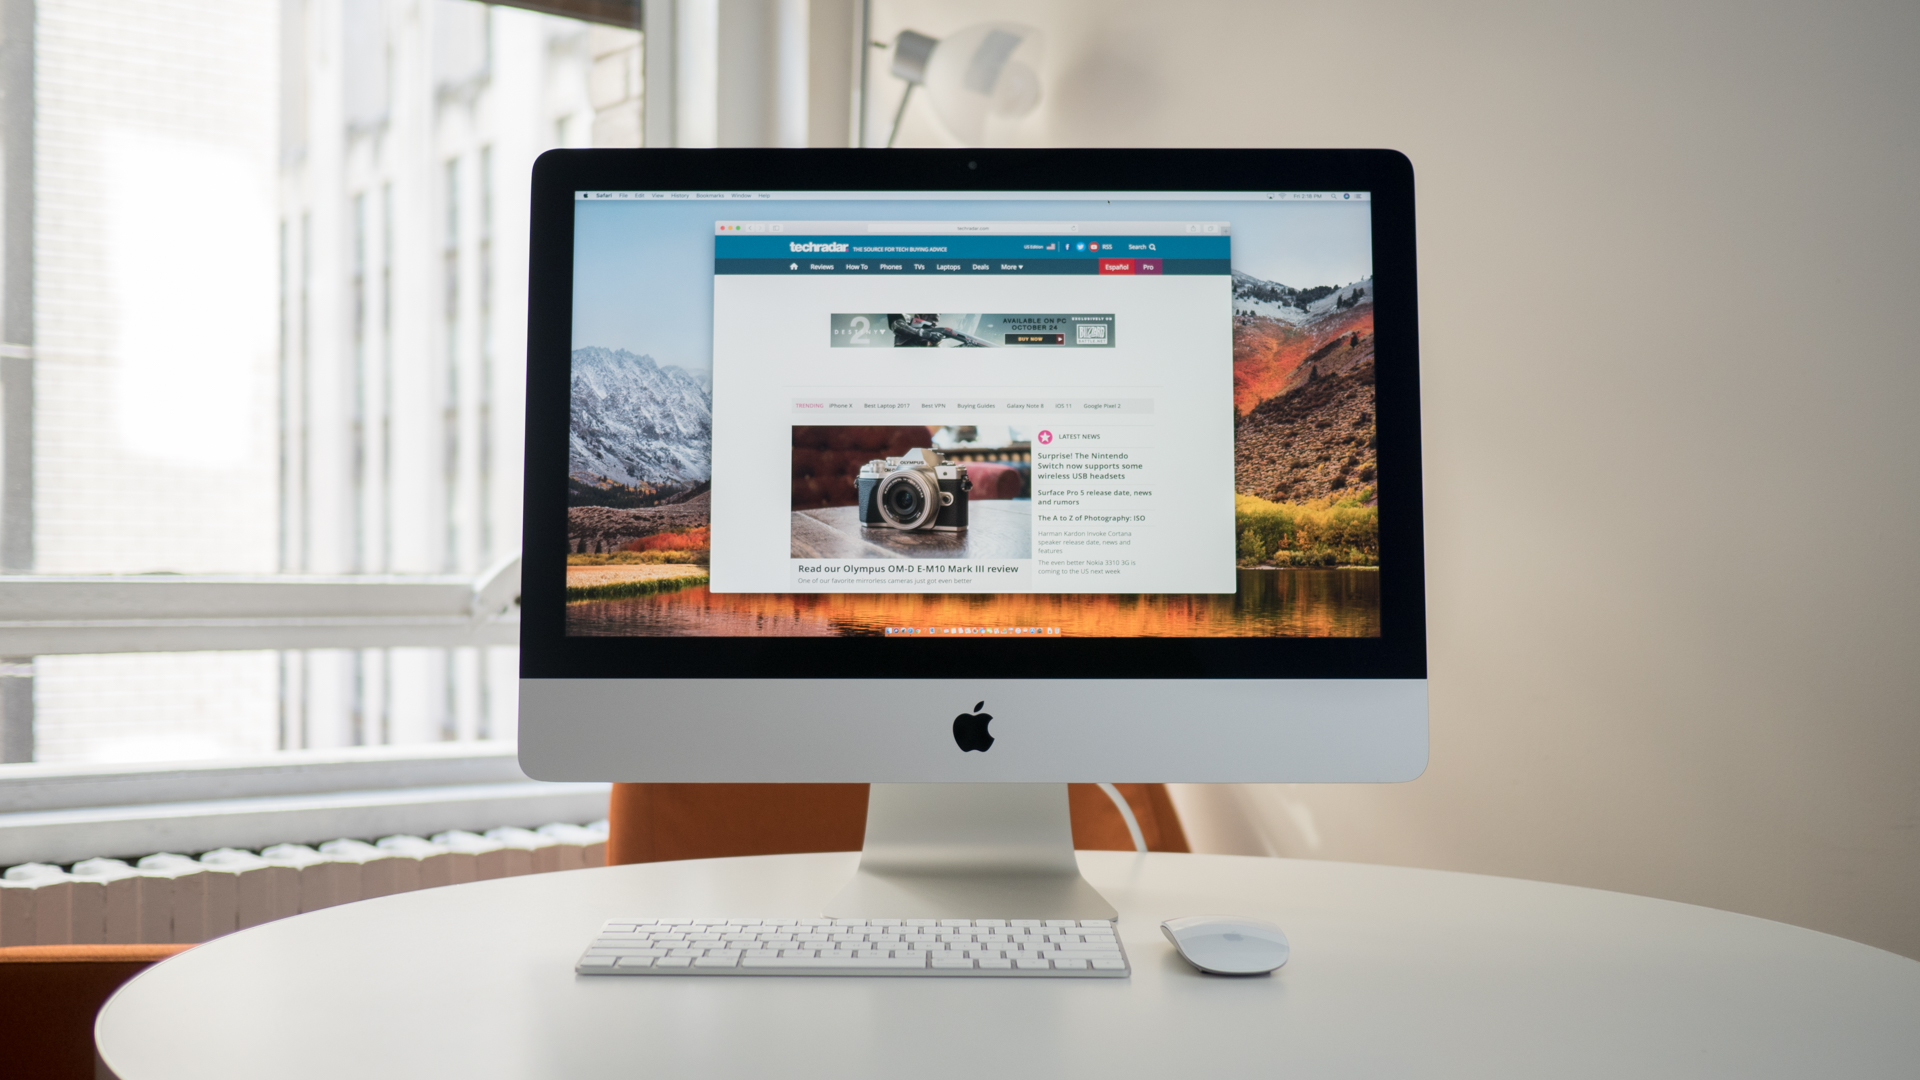 21.5-inch iMac with 4K Retina display - Best Mac 2016